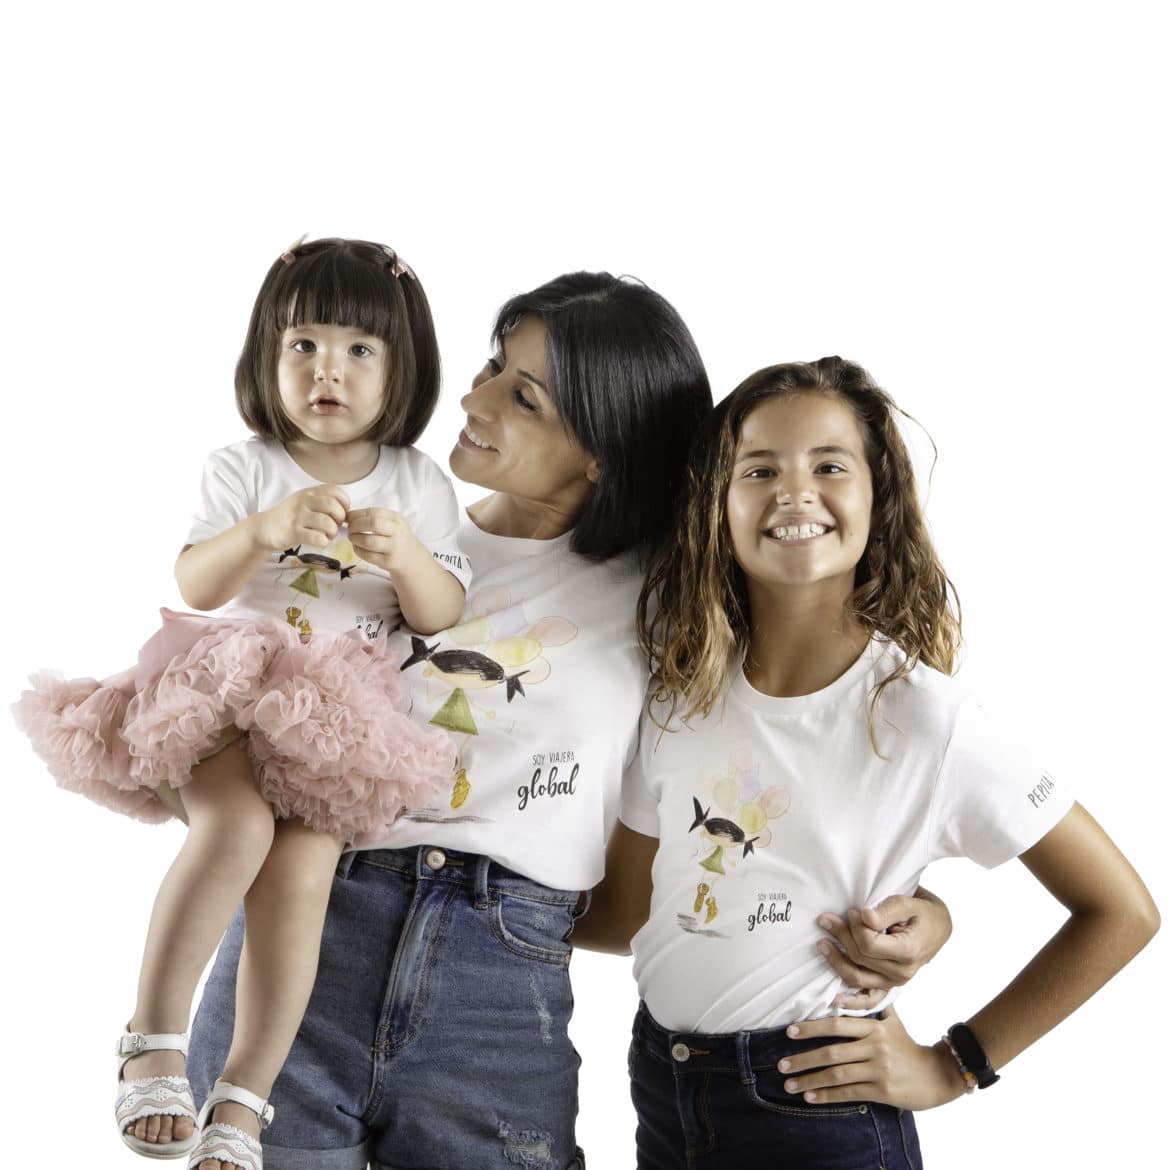 Camiseta de algodón orgánico modelo Viajera Global para lodos los que no pueden parar de viajar, en color blanco. Vista puesta en modelos chica adulta, niña y bebé